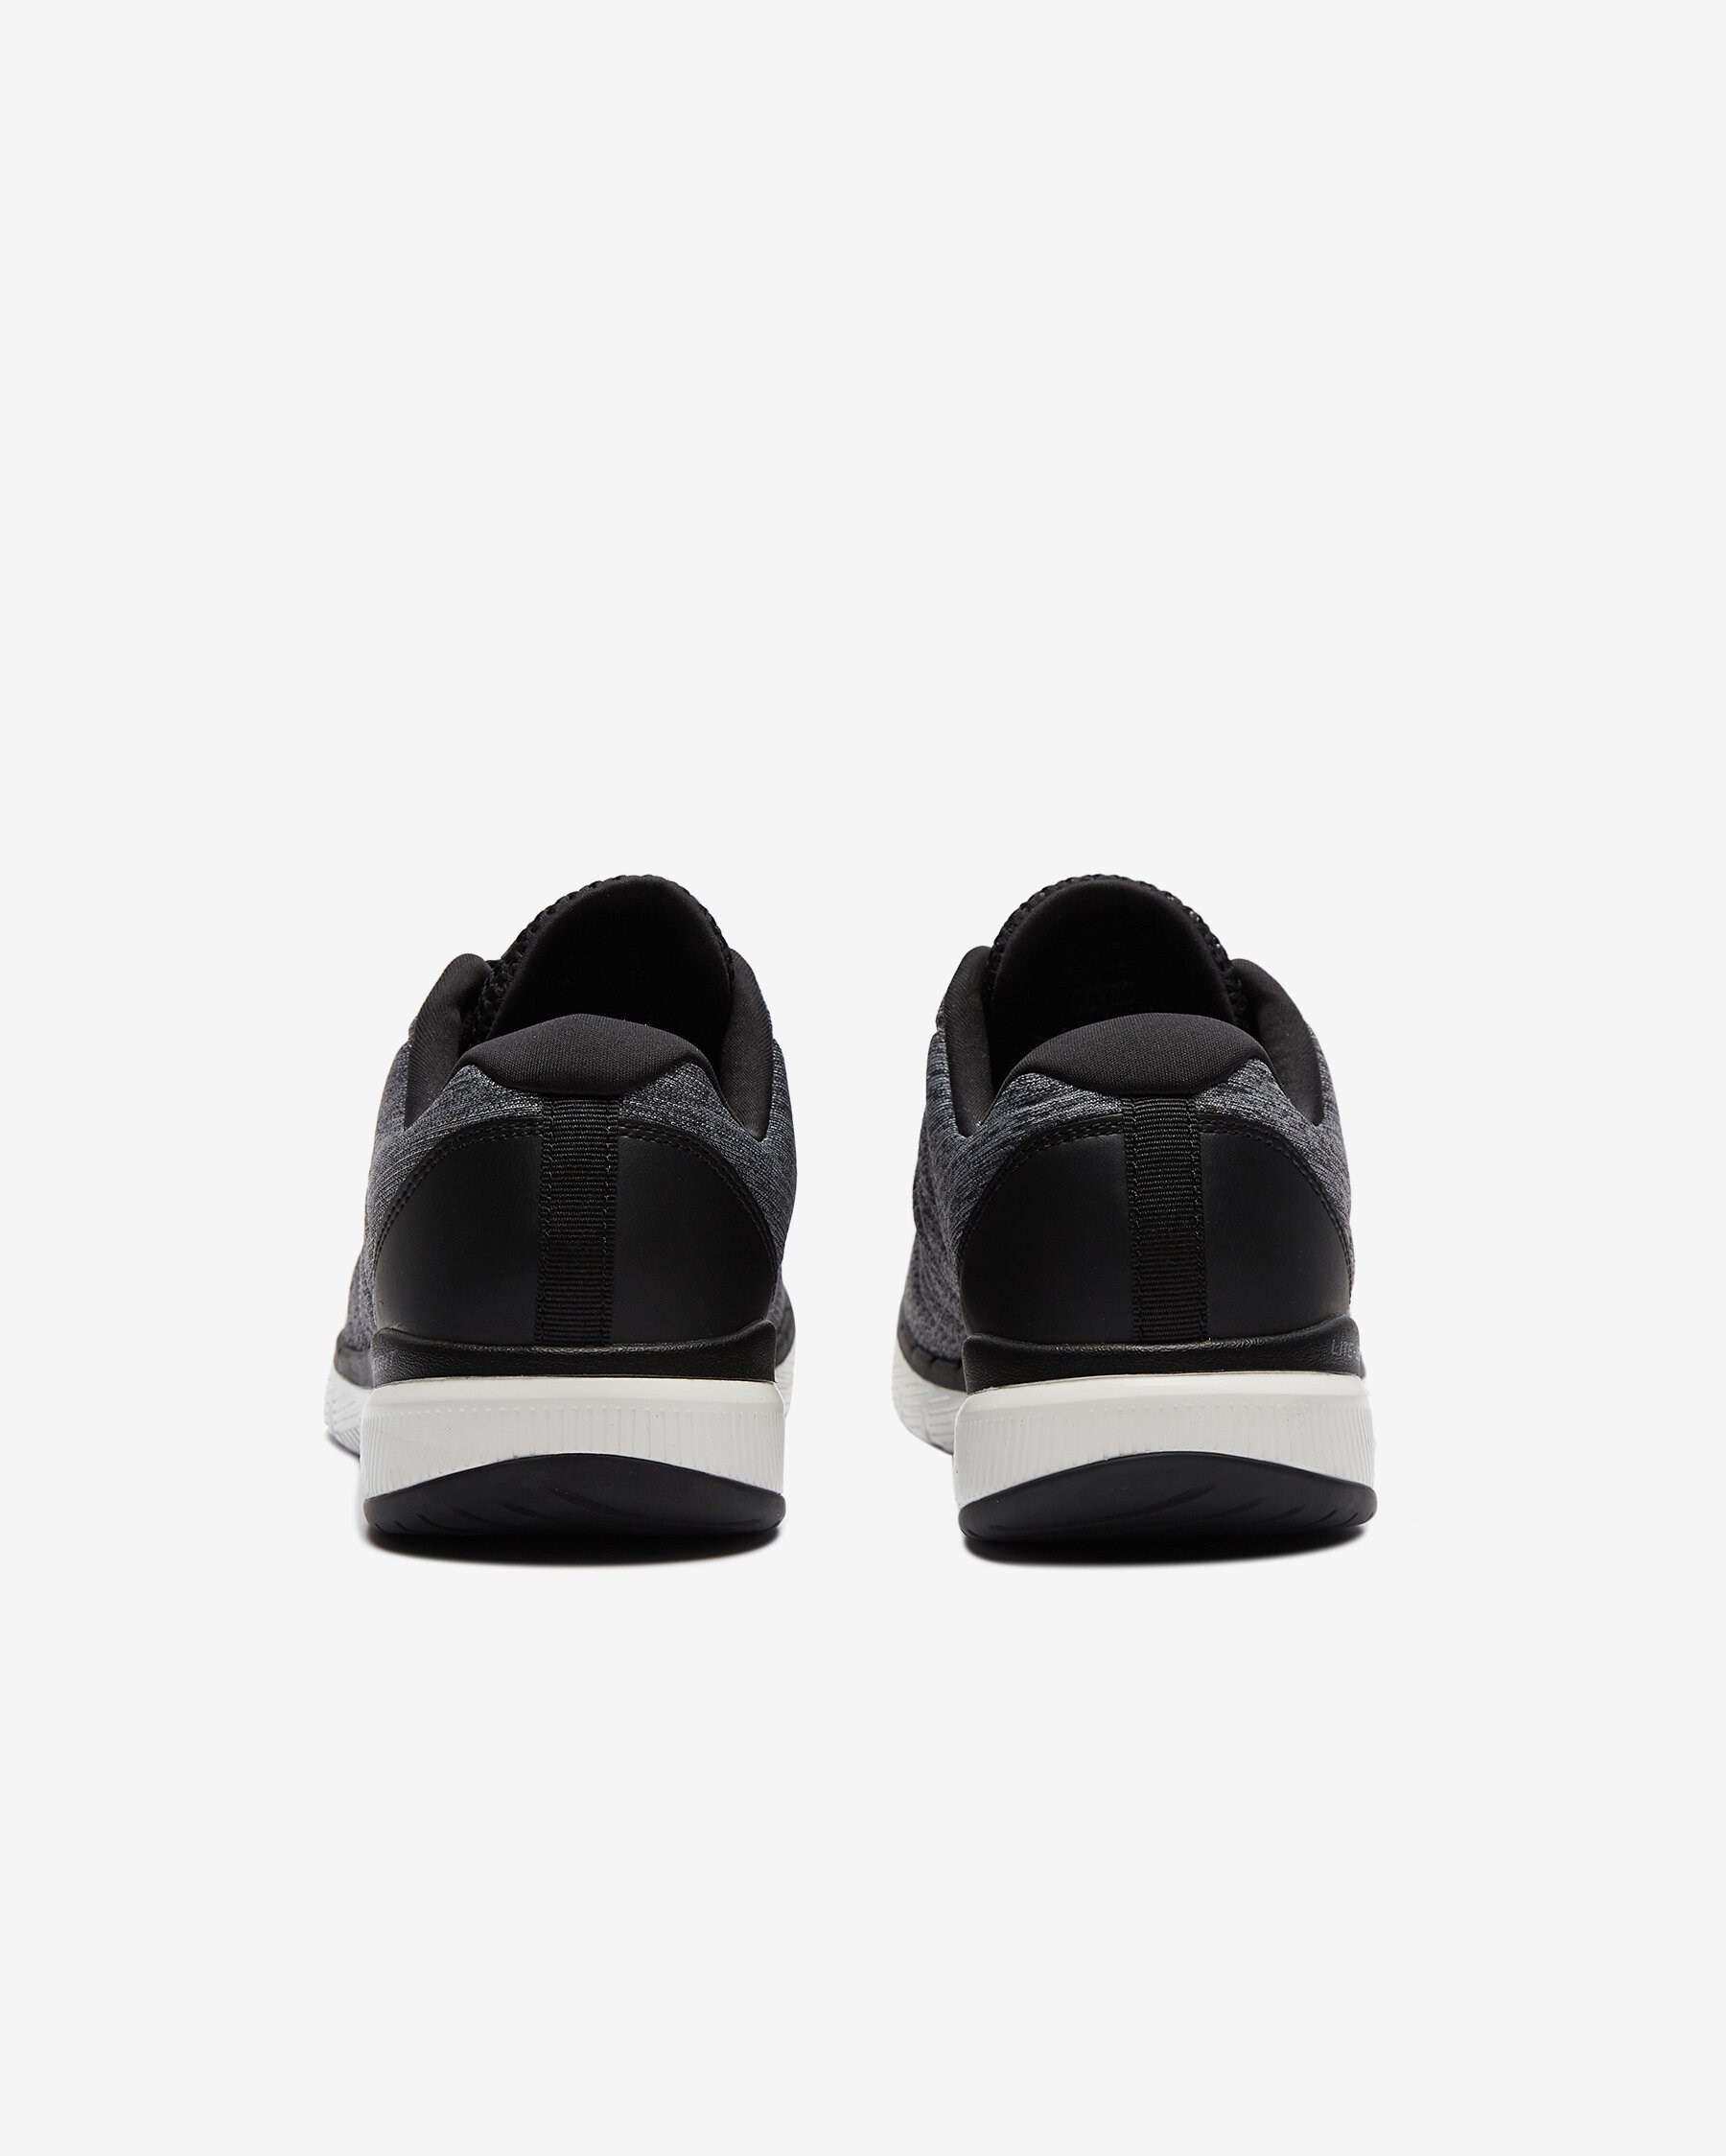 Skechers Erkek Ayakkabı S52957 Gri/Siyah